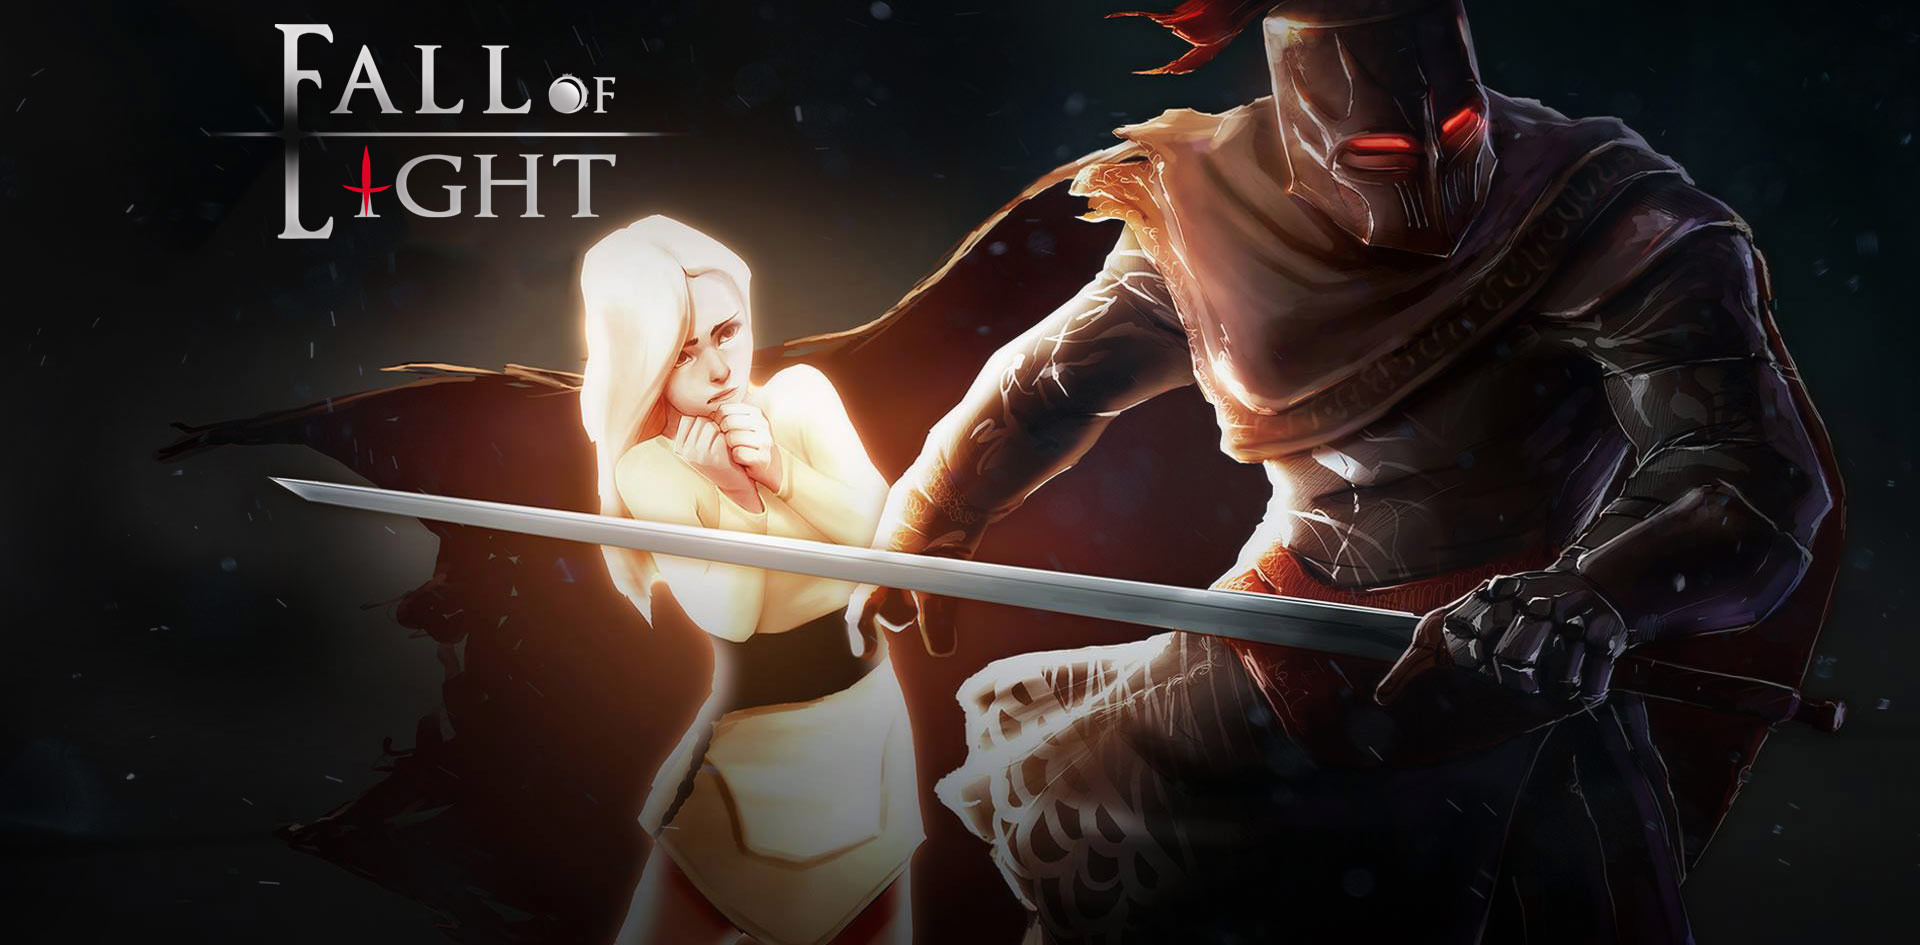 Fall of Light: Darkest Edition